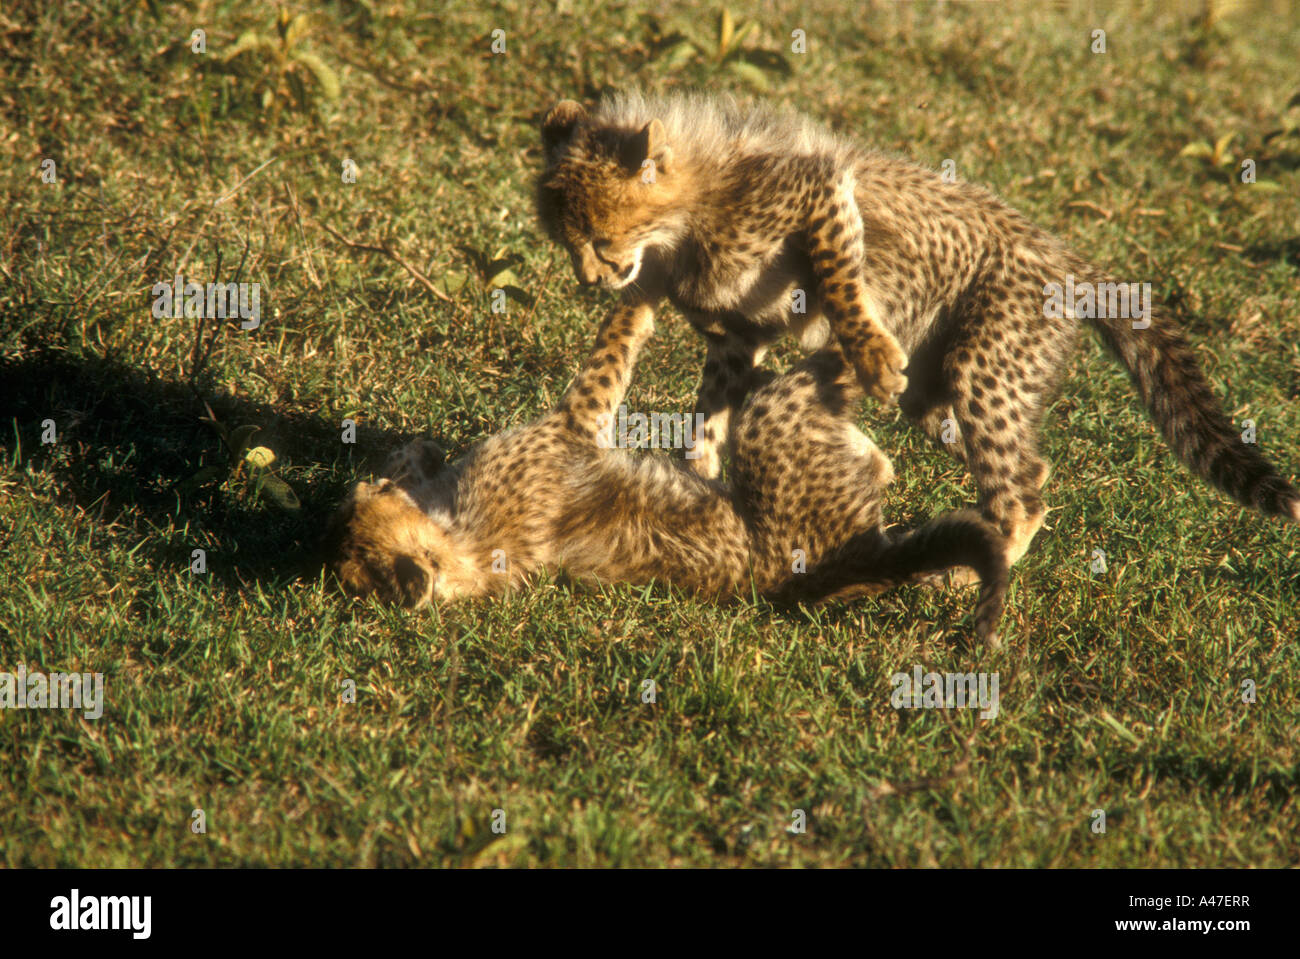 Deux jeunes oursons cheetah jouer la lutte contre le Masai Mara National Reserve Kenya Afrique de l'Est Banque D'Images